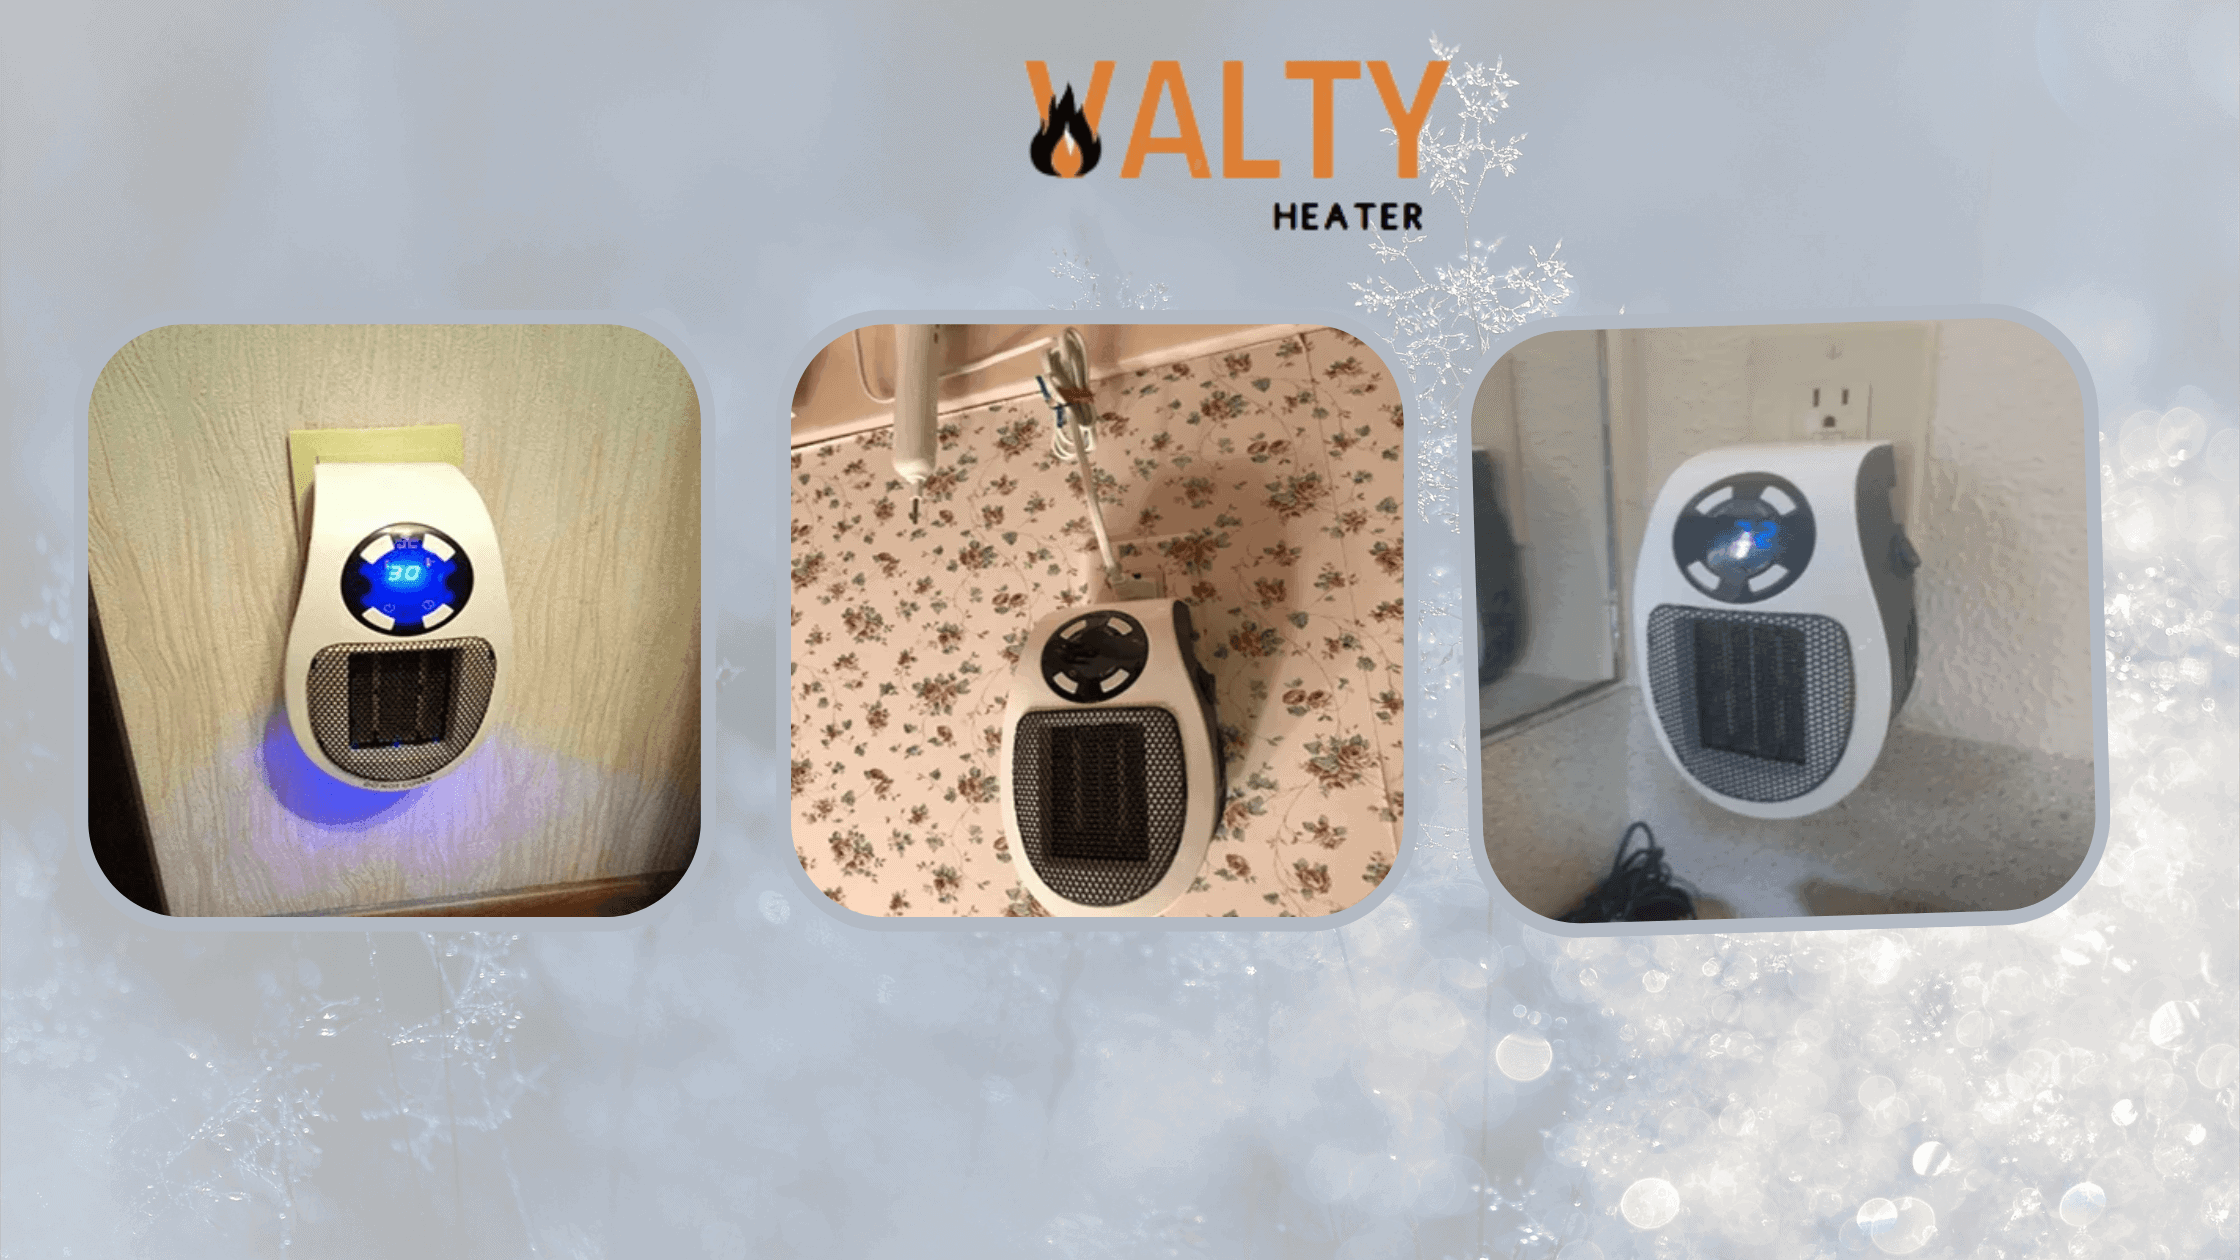 Valty Heater Customer Reviews